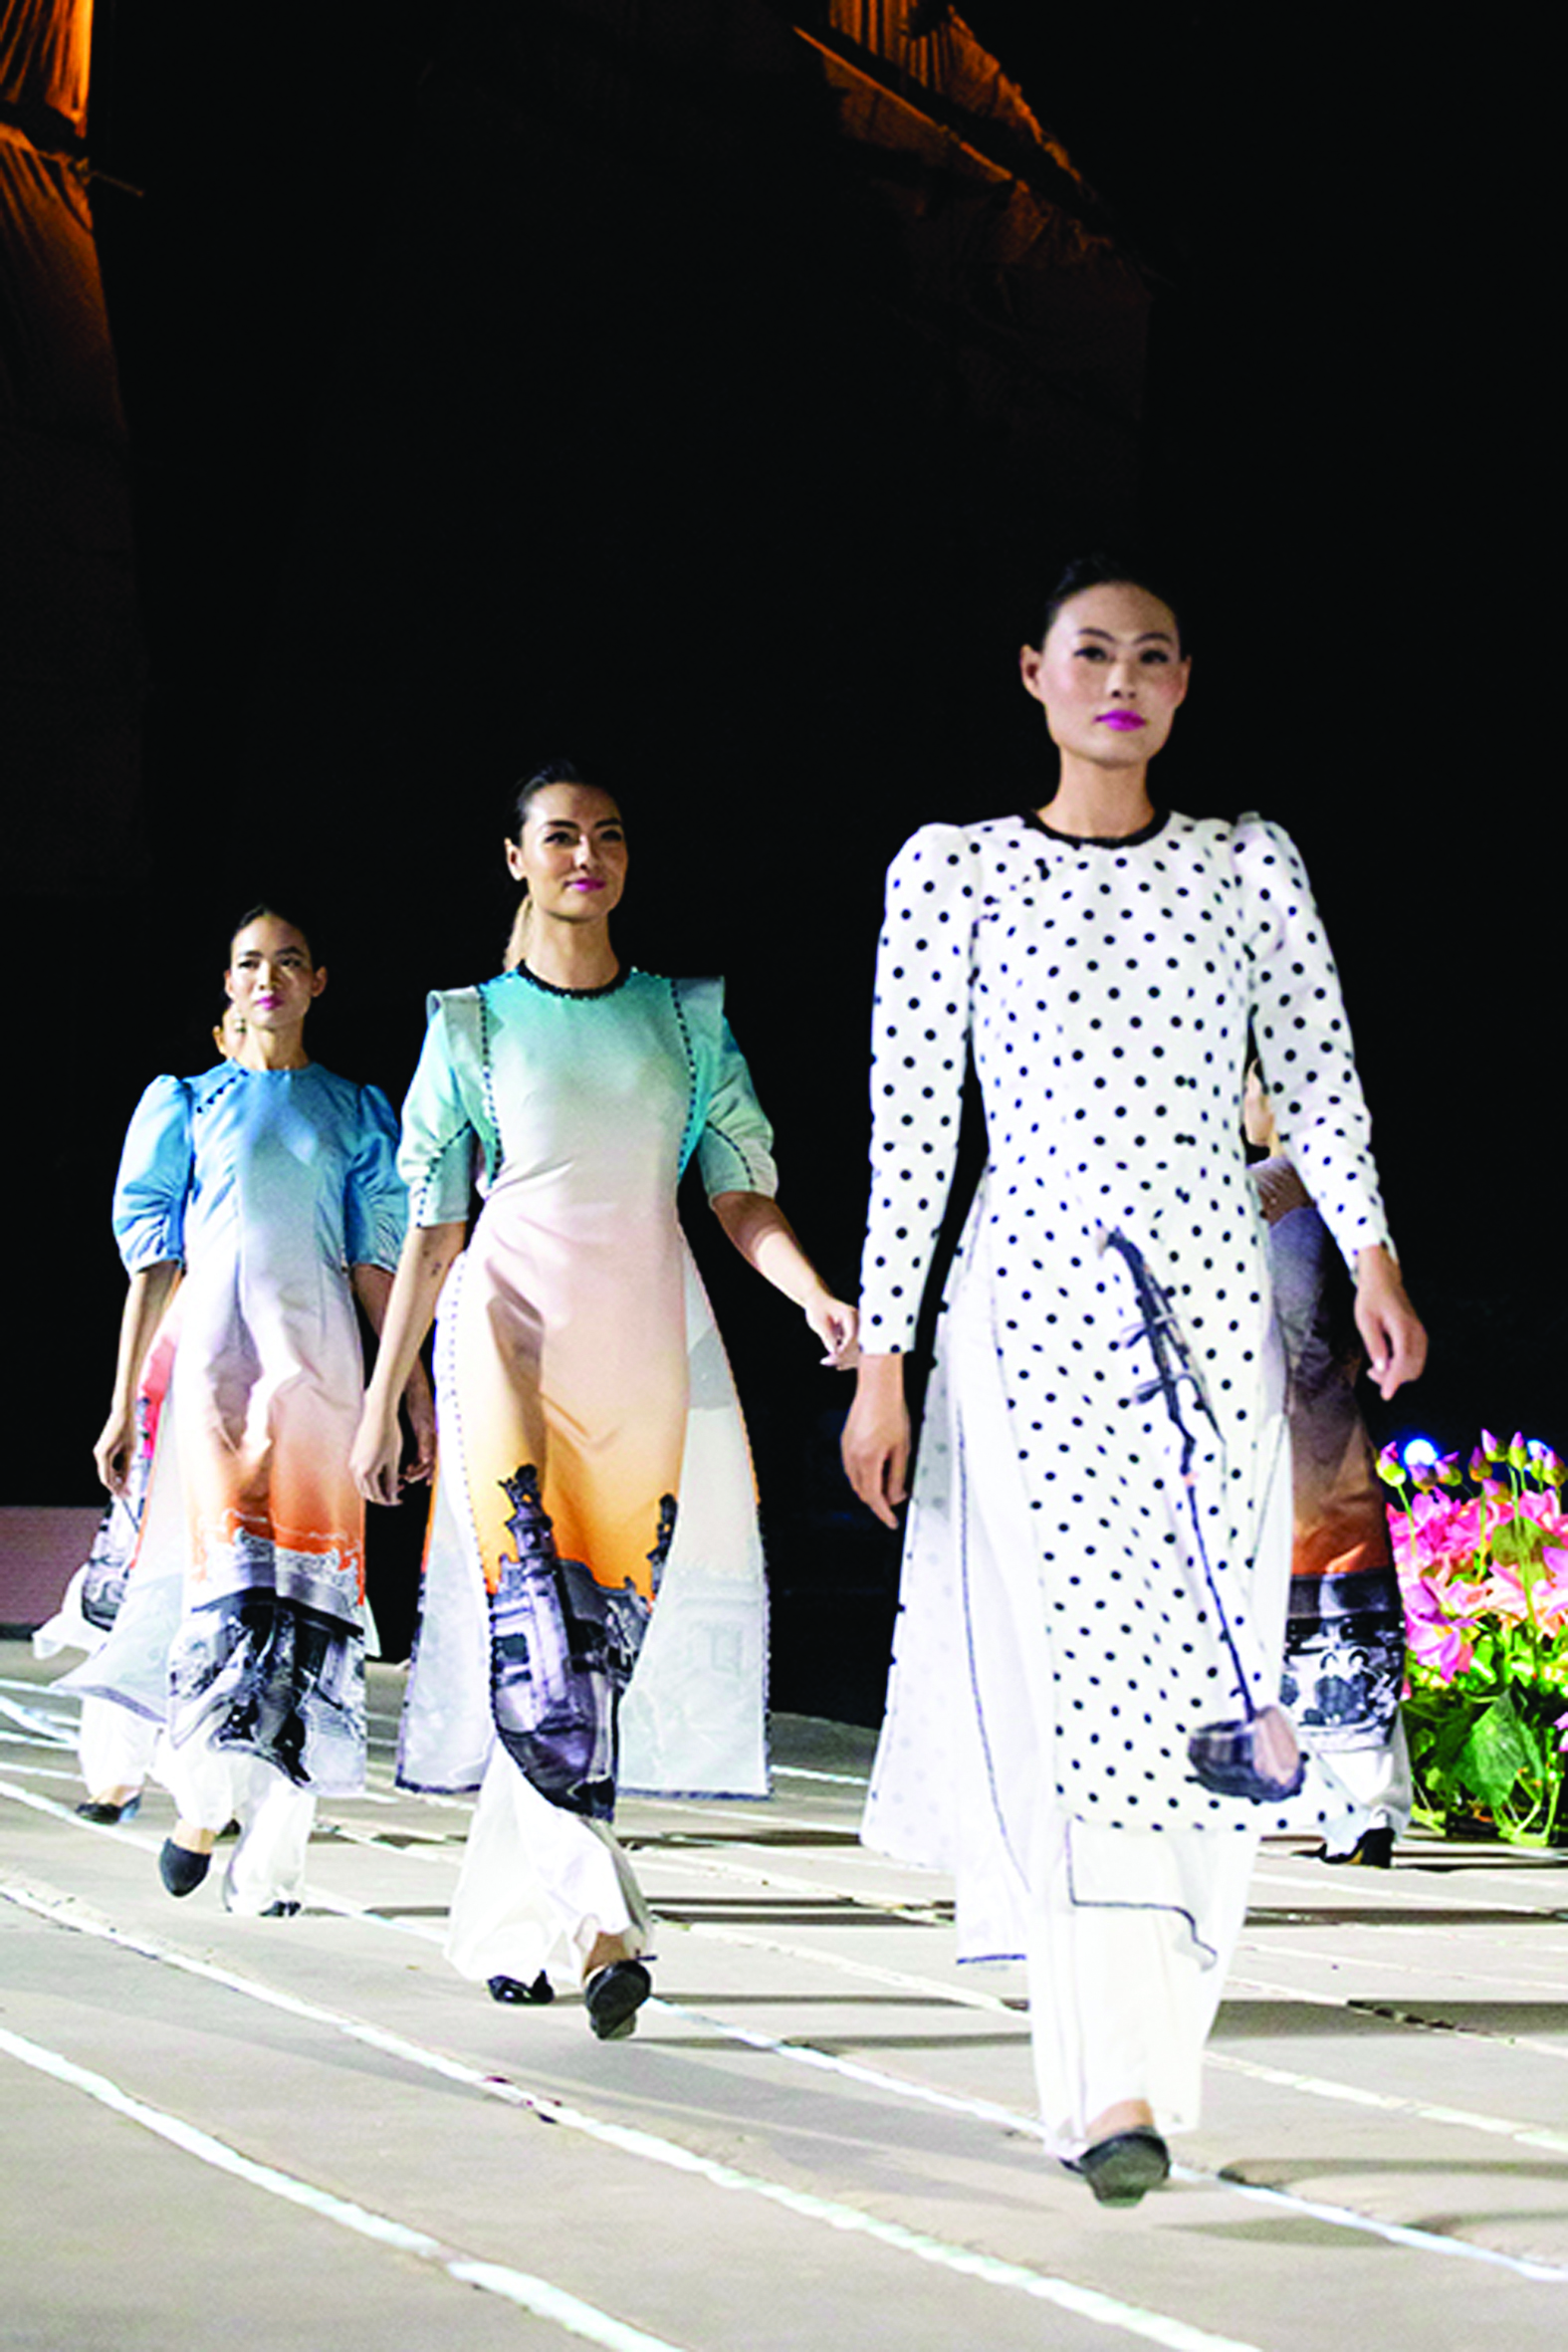  Bộ sưu tập áo dài của NTK Hà Duy lấy ý tưởng từ ca trù - loại hình diễn xướng bằng âm nhạc thịnh hành tại khu vực Bắc Bộ và Bắc Trung Bộ Việt Nam.p/Ảnh: Nguyễn An